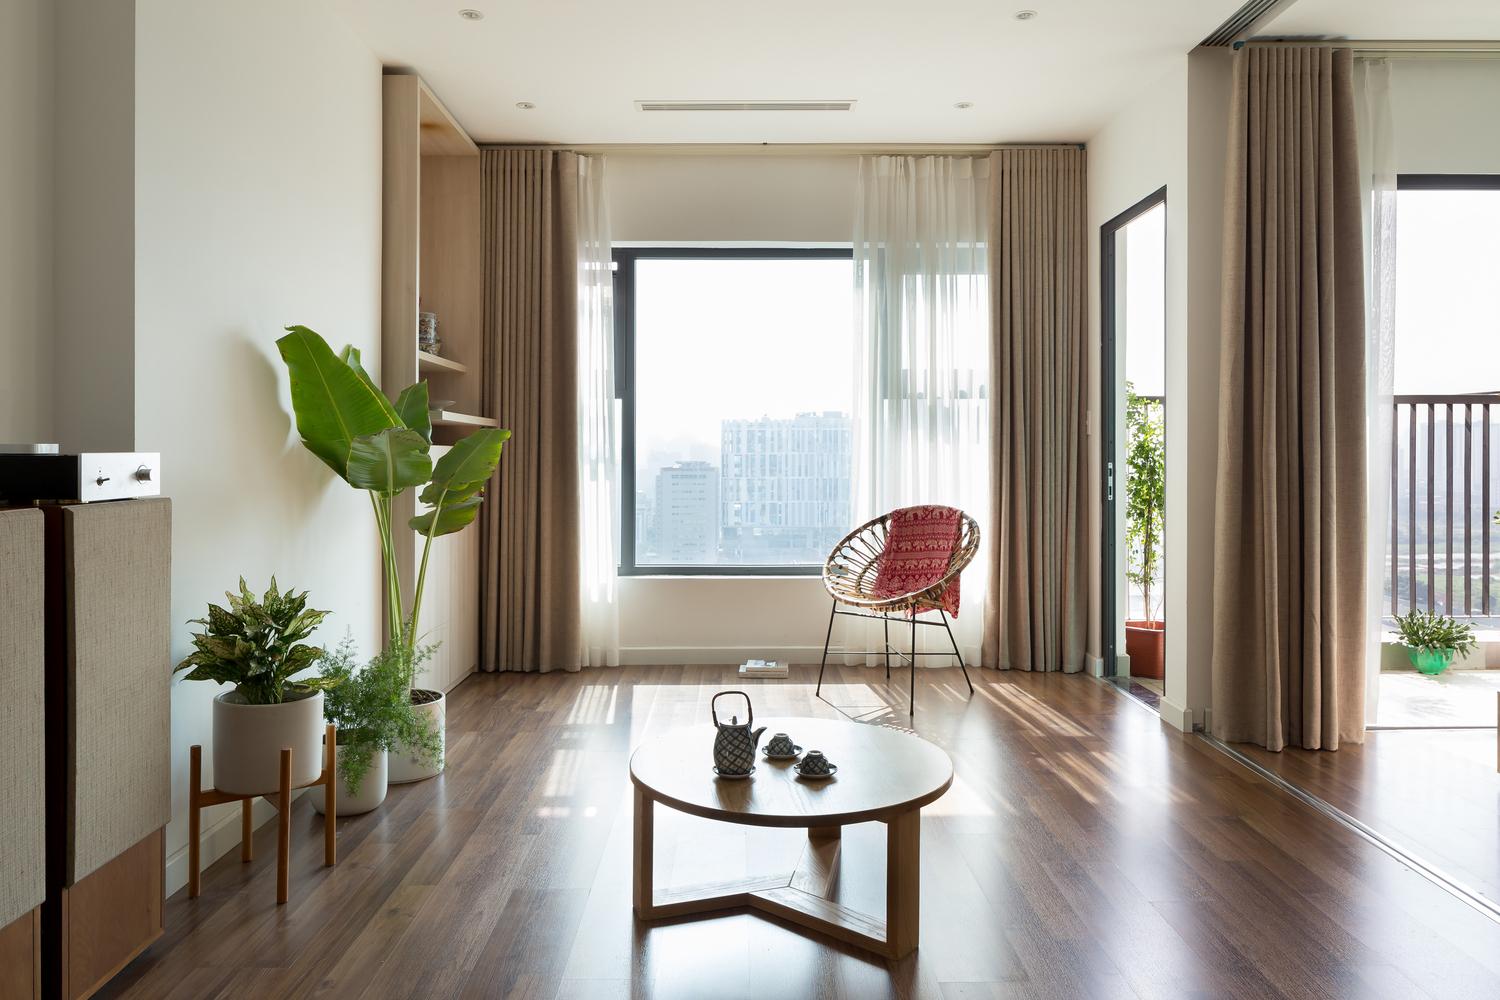 越南河內住宅拆除房間牆壁 為現代人打造舒適生活空間